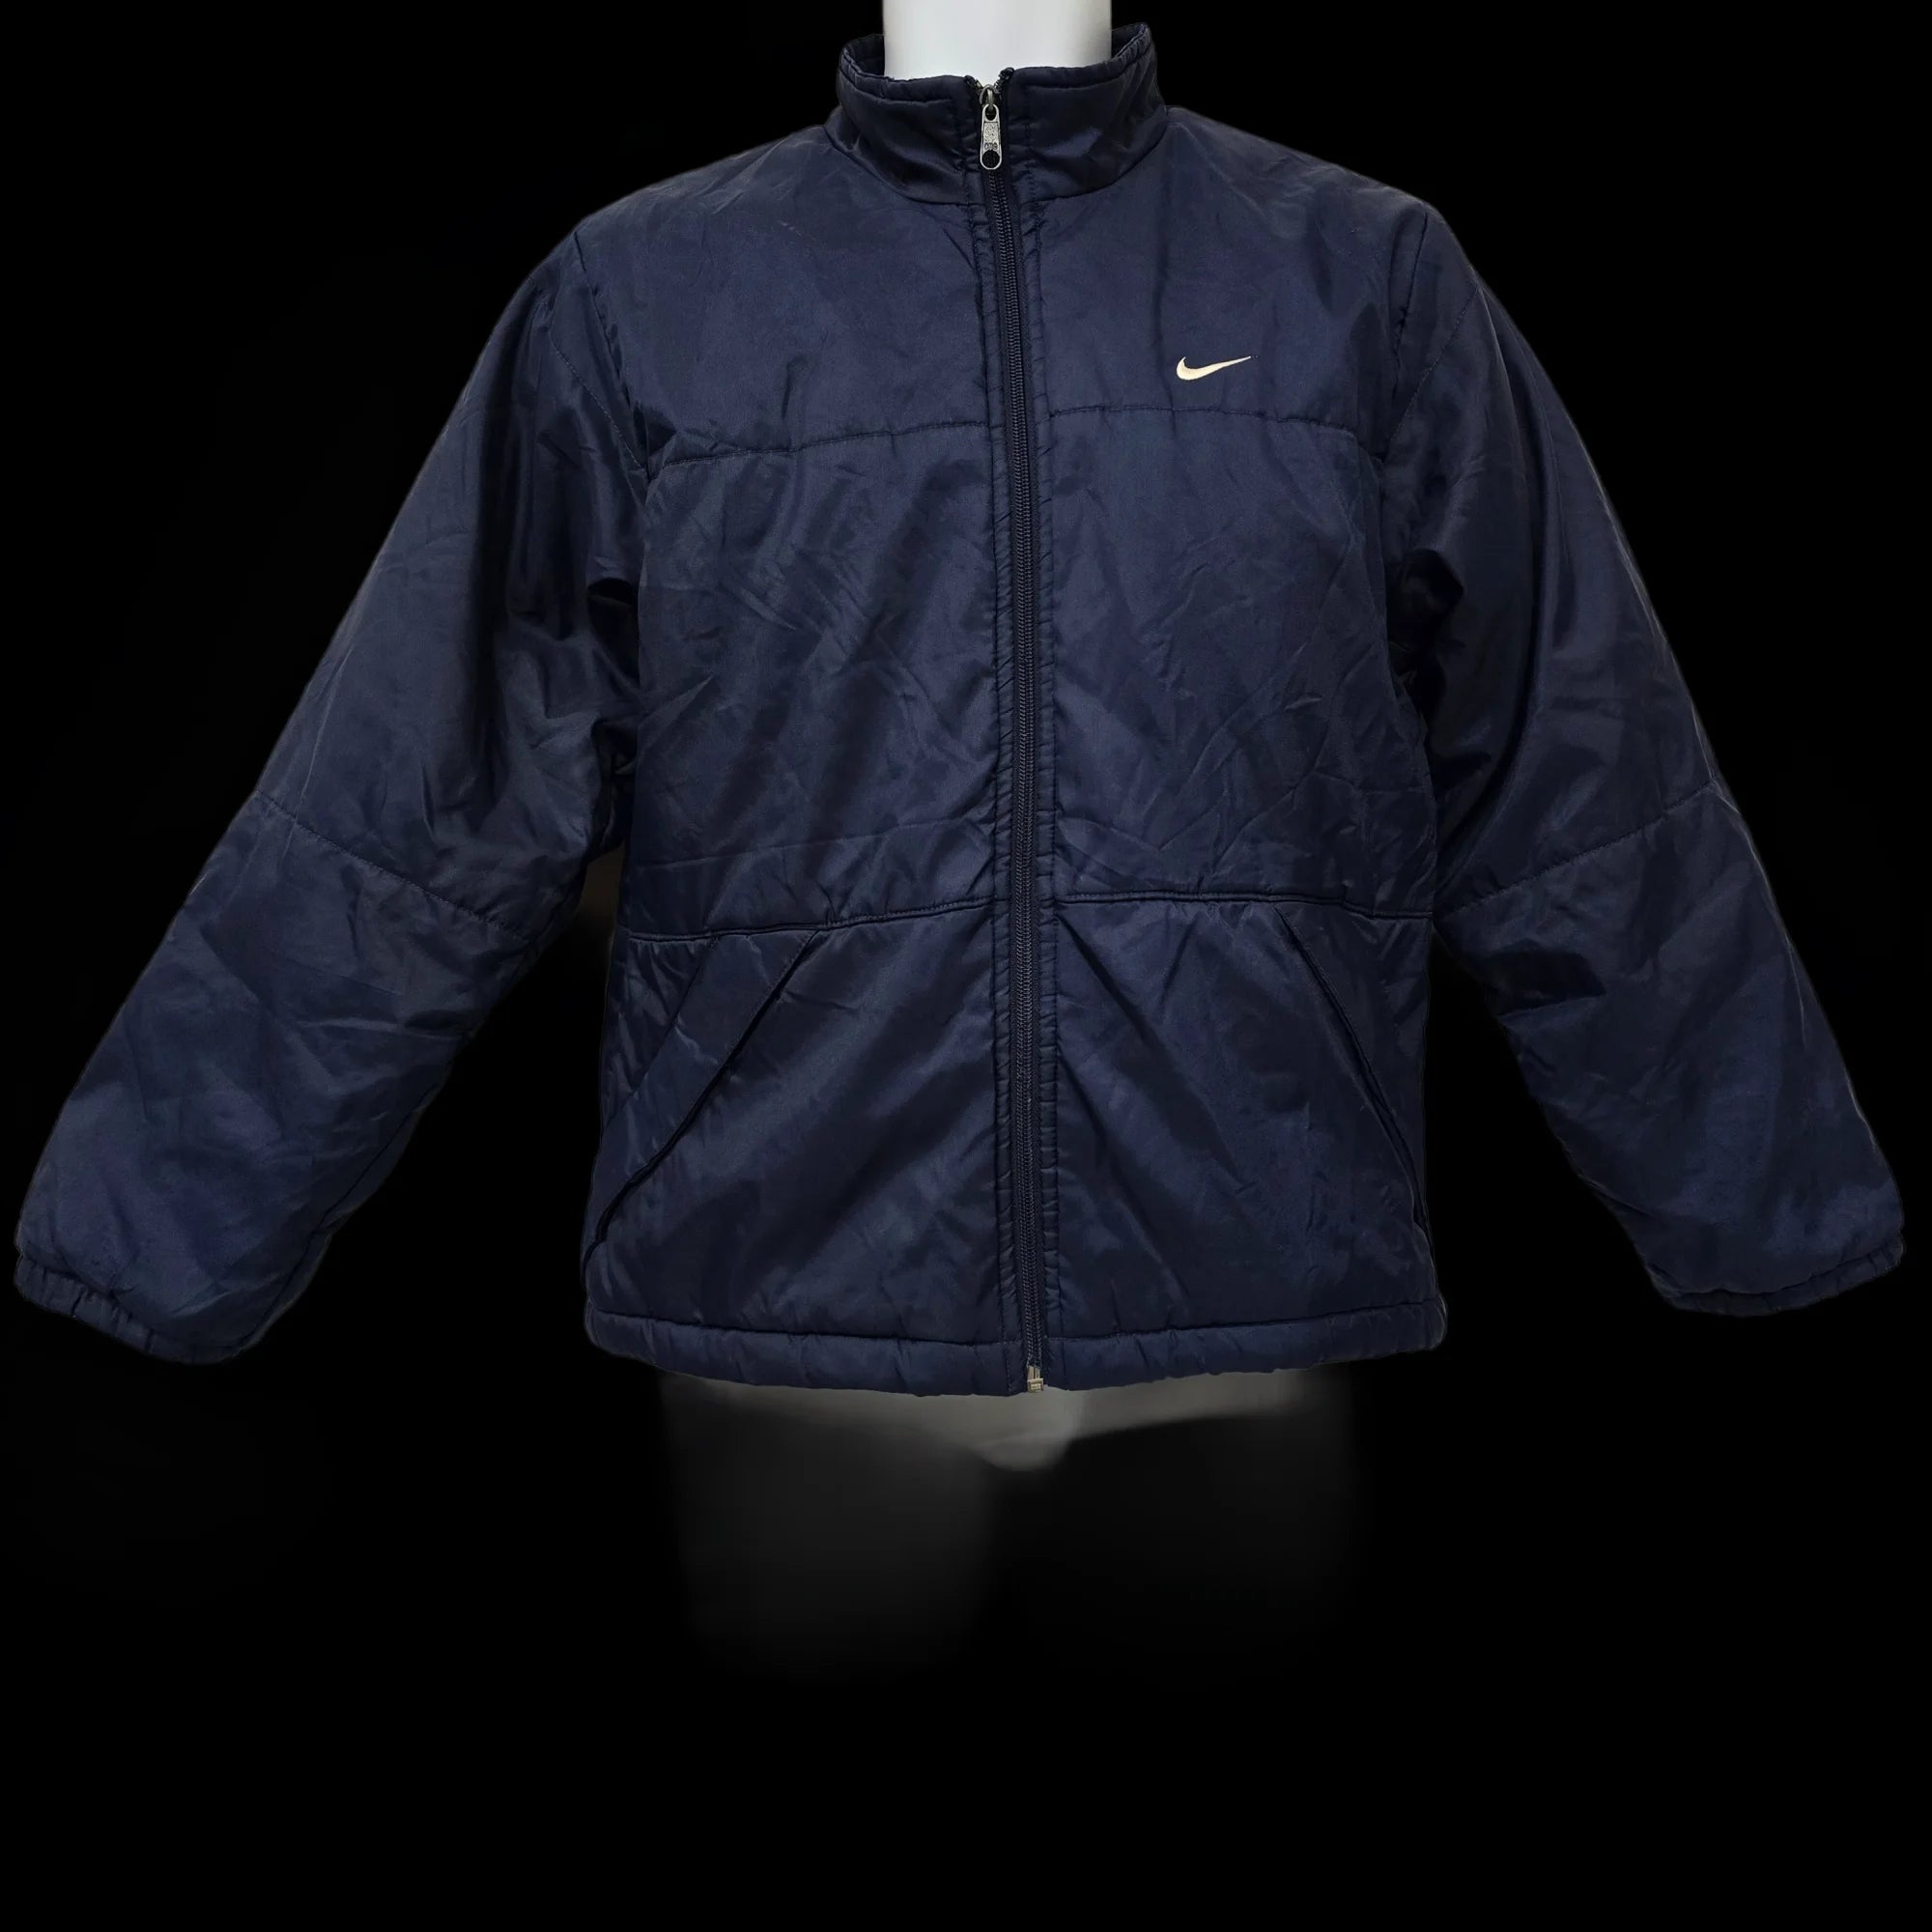 Unisex Nike Blue Bomber Jacket Coat UK Large - 3 - 3465